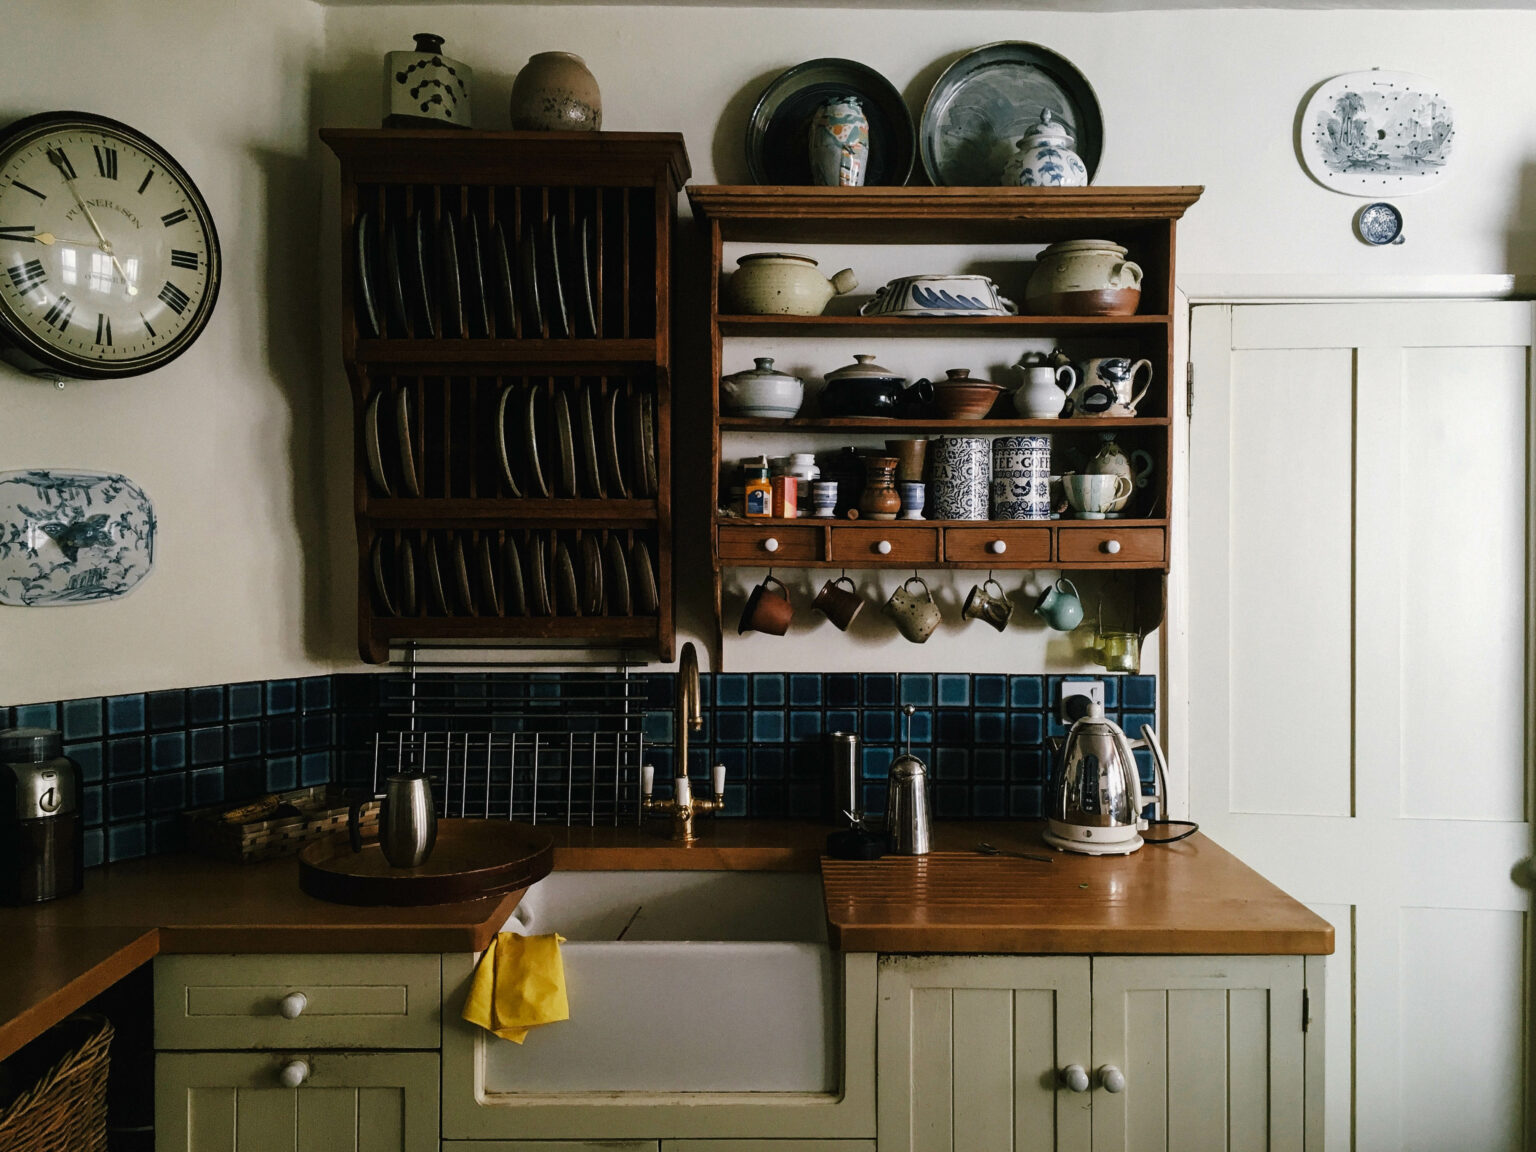 Abschnitt einer älteren Küche im Retro Design im Haus einer älteren Person